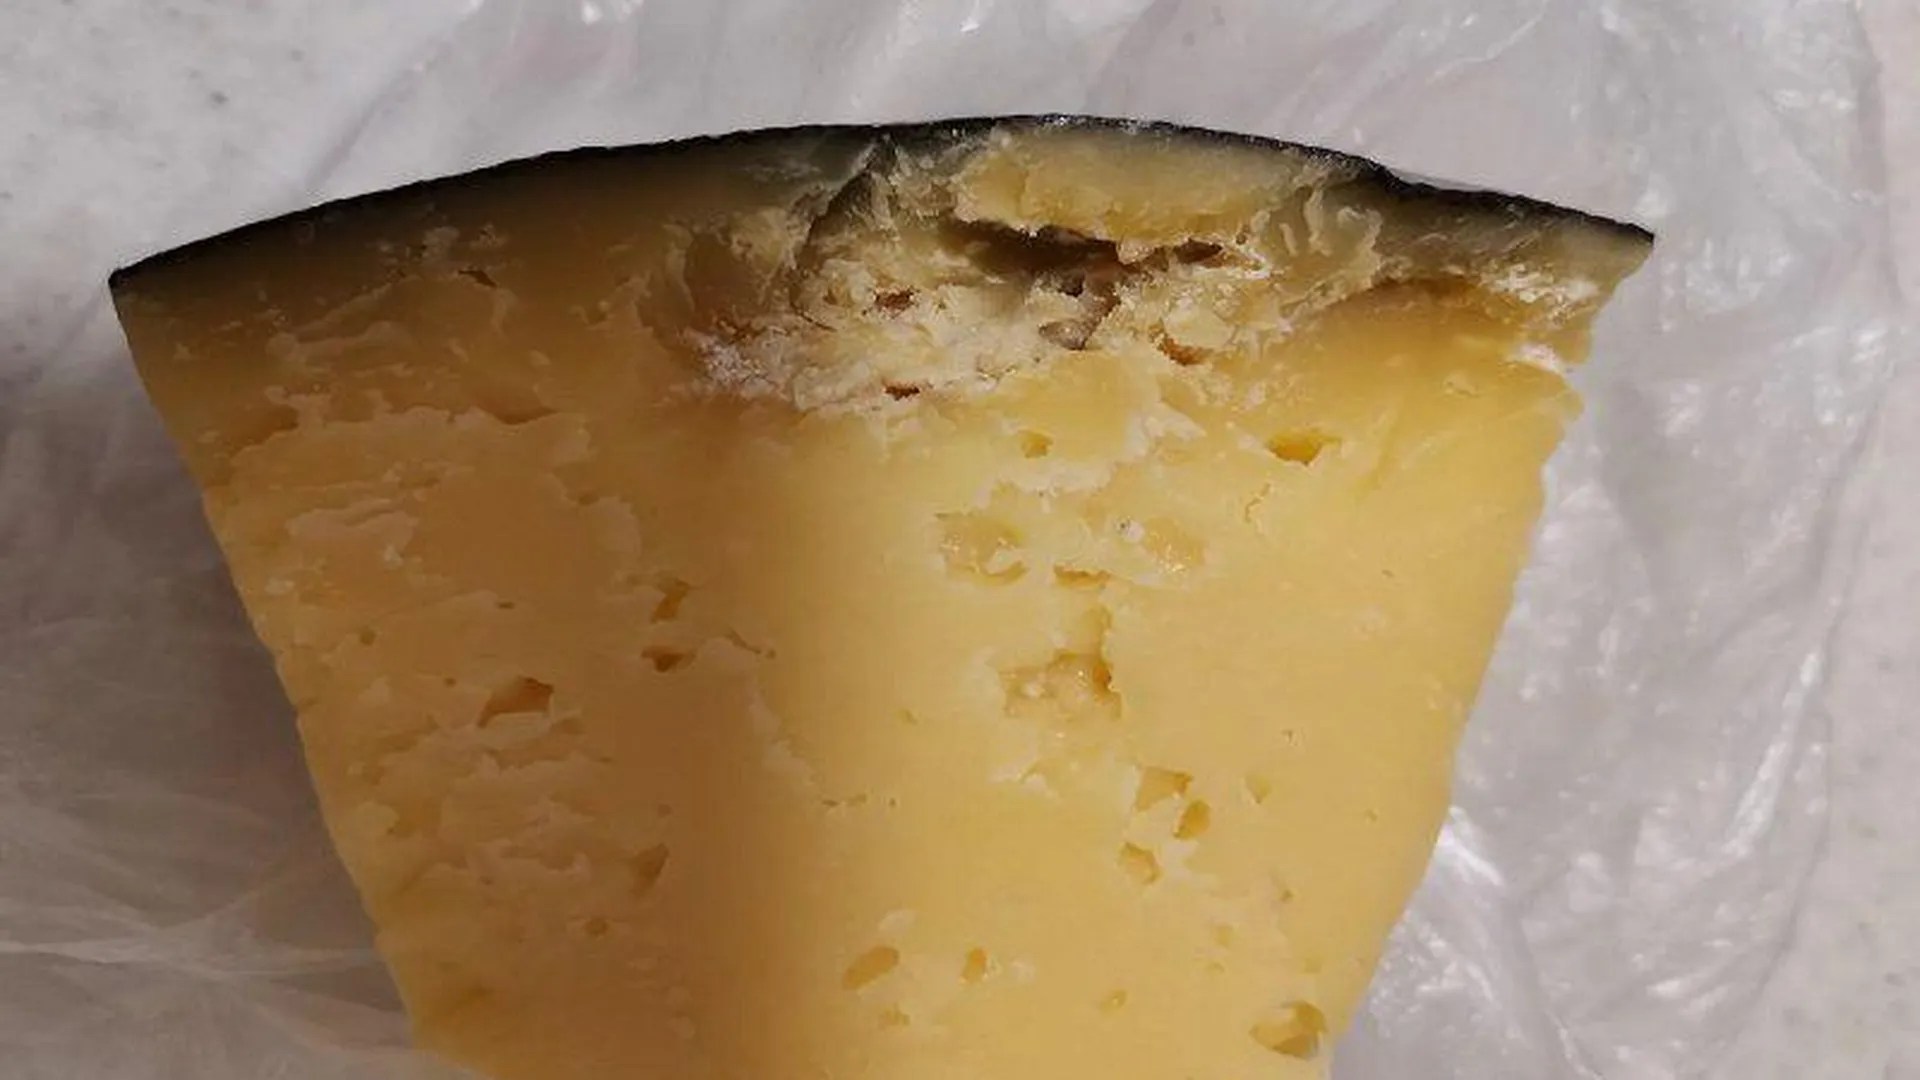 Жители Дубны жалуются в сети на заплесневелый сыр, продающийся в местном магазине